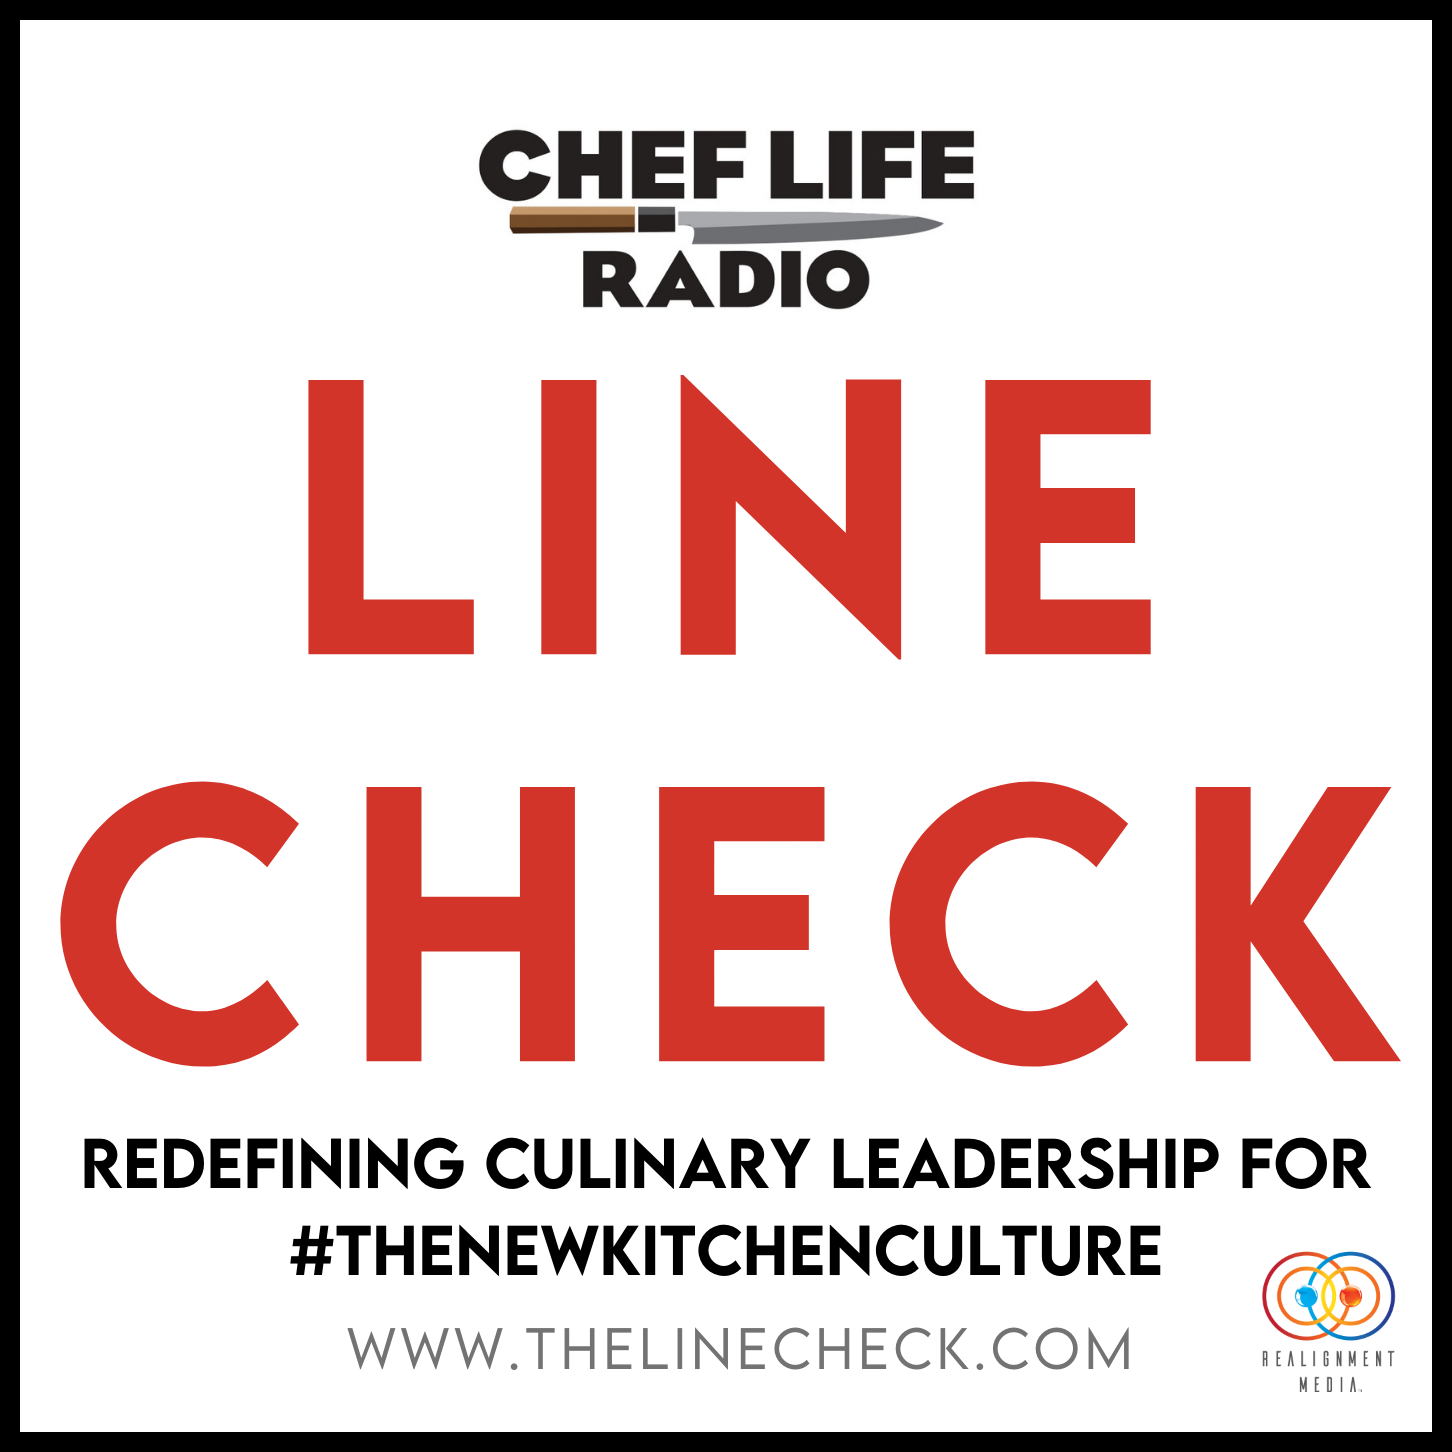 Chef Life Radio: Line Check - Chef Life Radio: Line Check Image